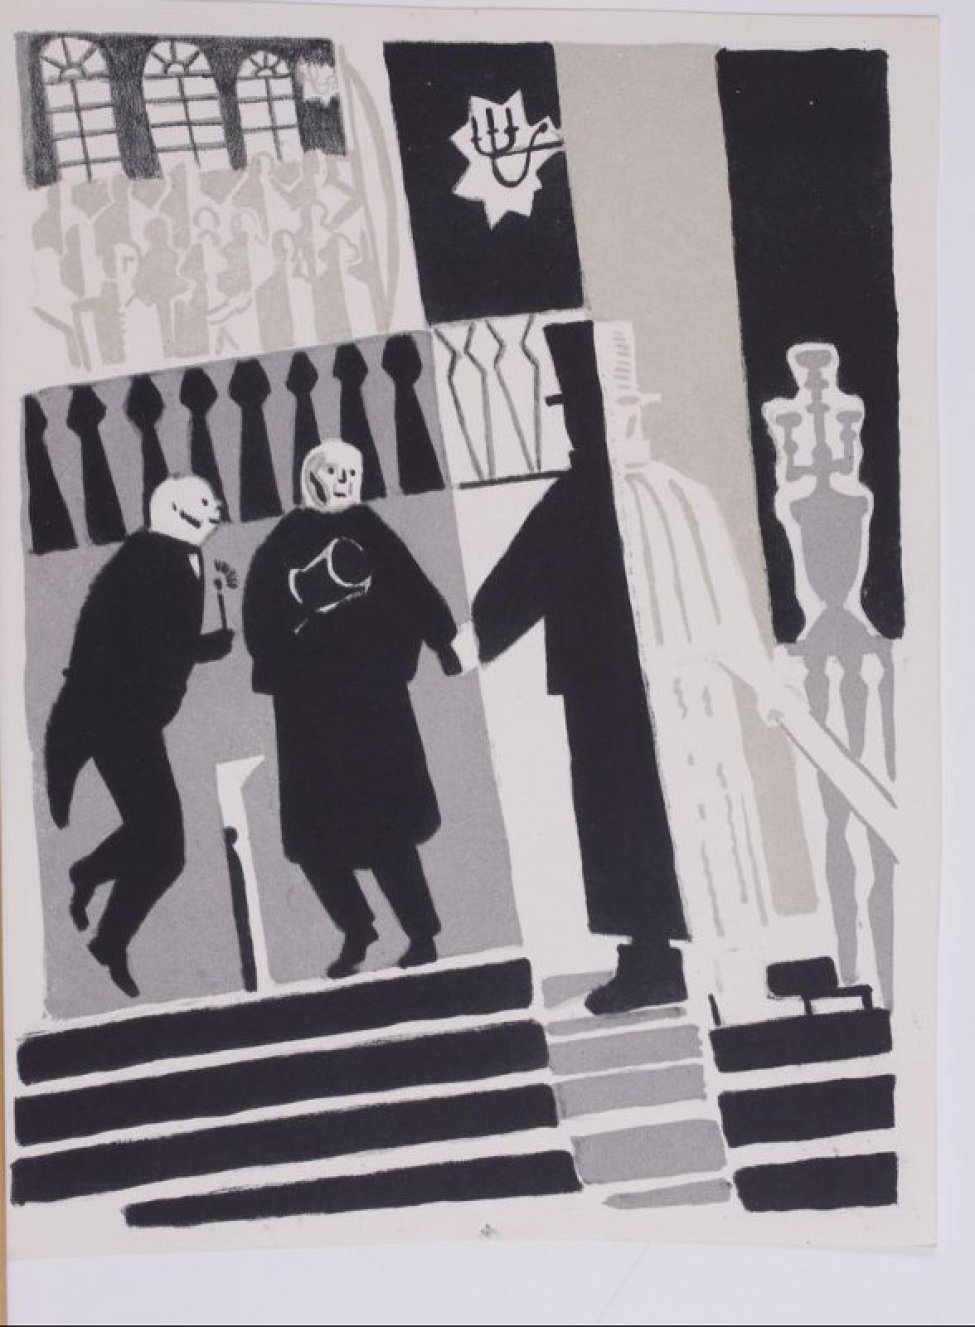 Изображены, стилизованно  исполненные, фигуры трех мужчин, стоящие на верхней ступеньке лестницы; слева - со свечой в руке, в центре - с цилиндром в руке.